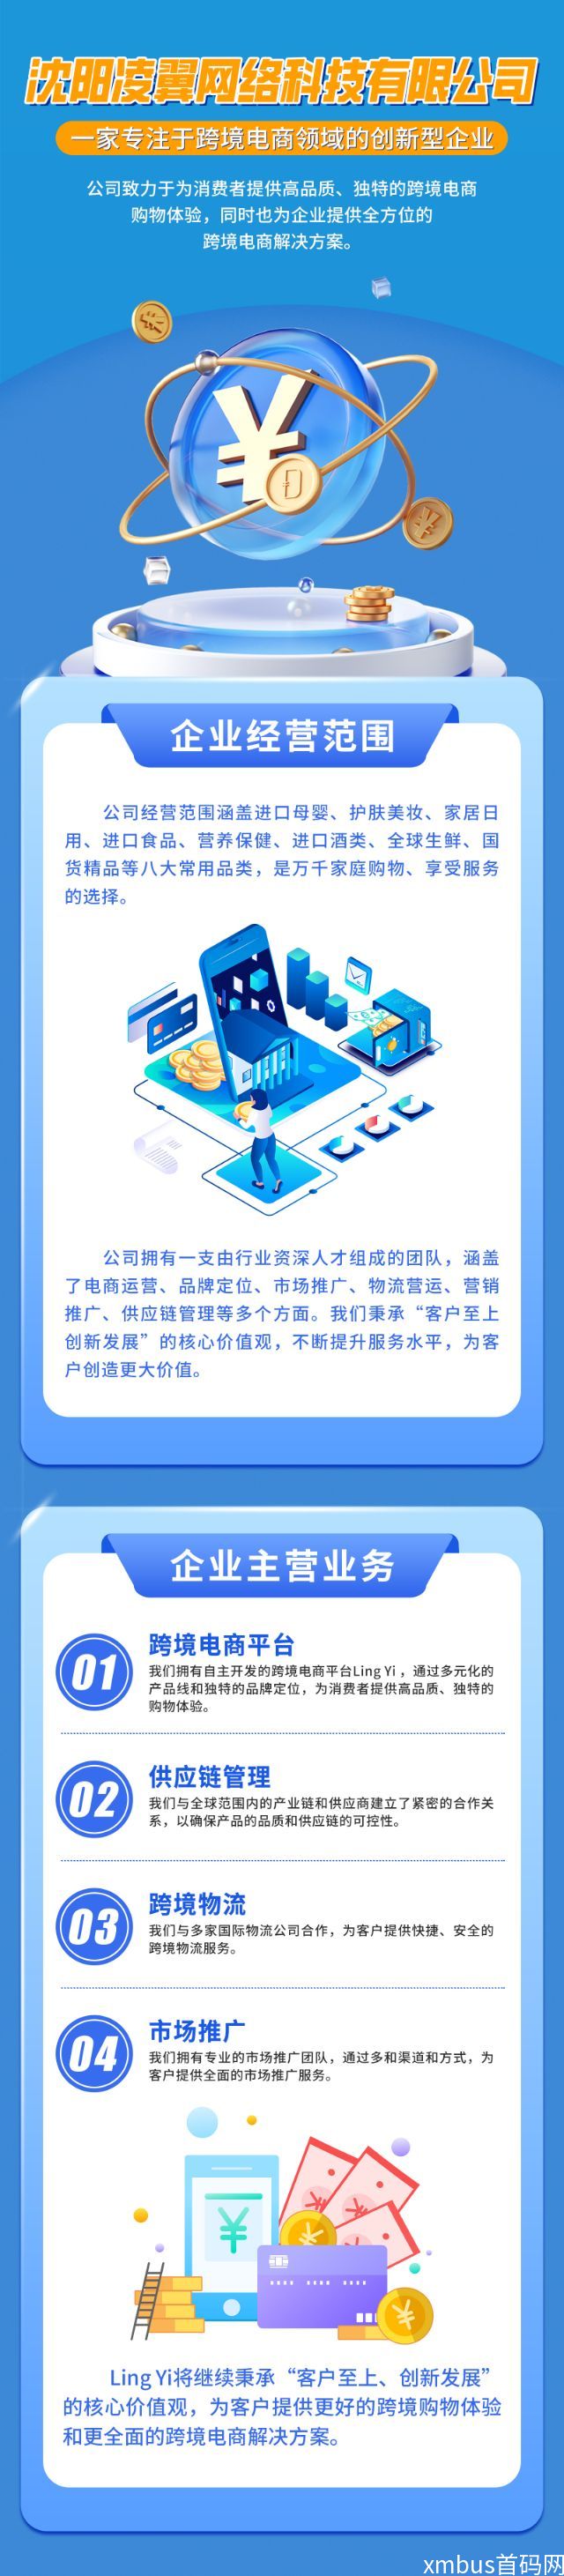 lingyi，最新无货源开店，注册就送20美金，免费上架产品_3